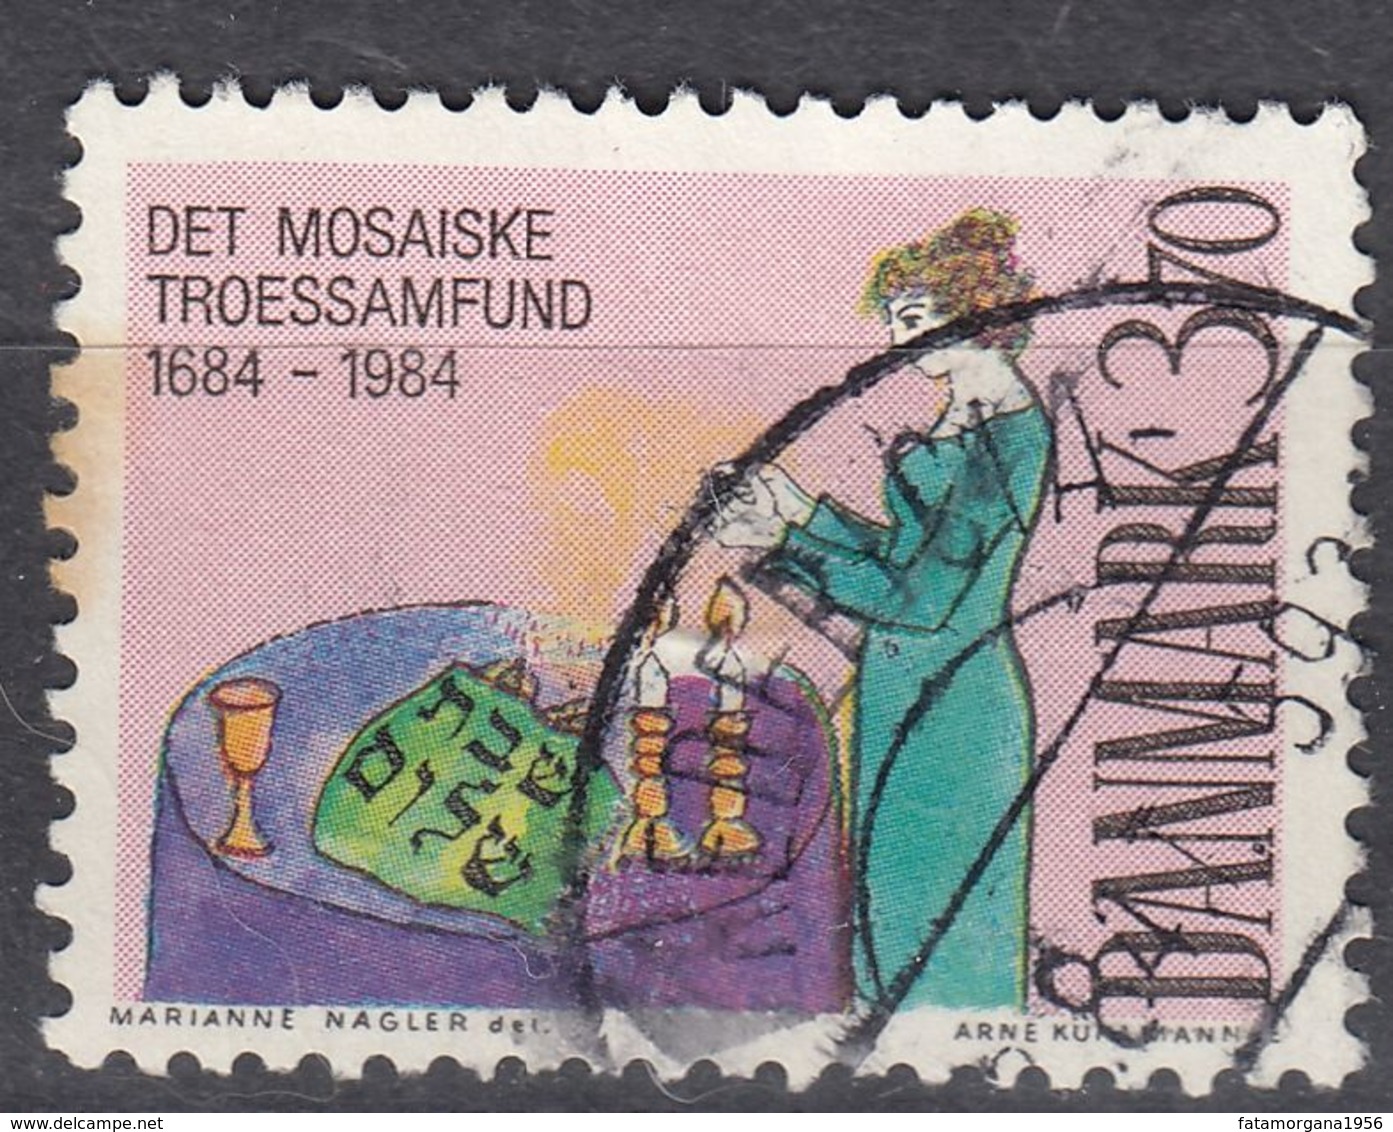 DANMARK - 1984 - Yvert 819, Usato, Come Da Immagine. - Used Stamps